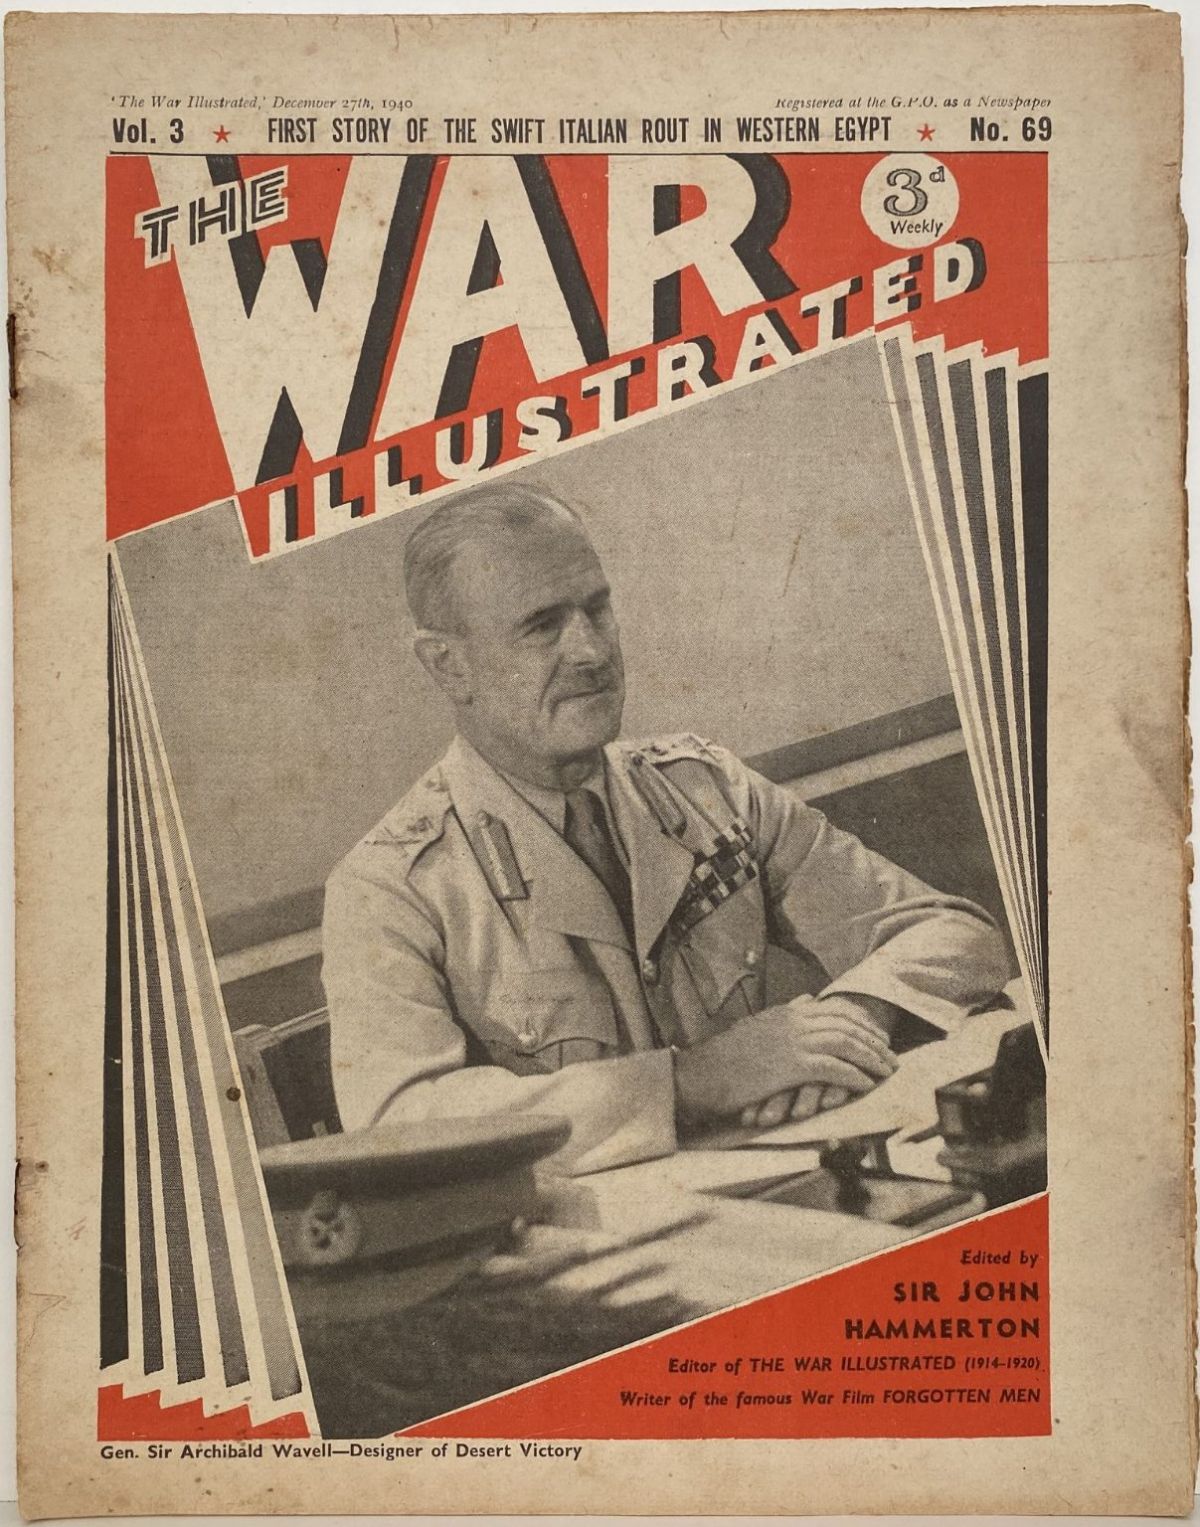 THE WAR ILLUSTRATED - Vol 3, No 69, 27th Dec 1940